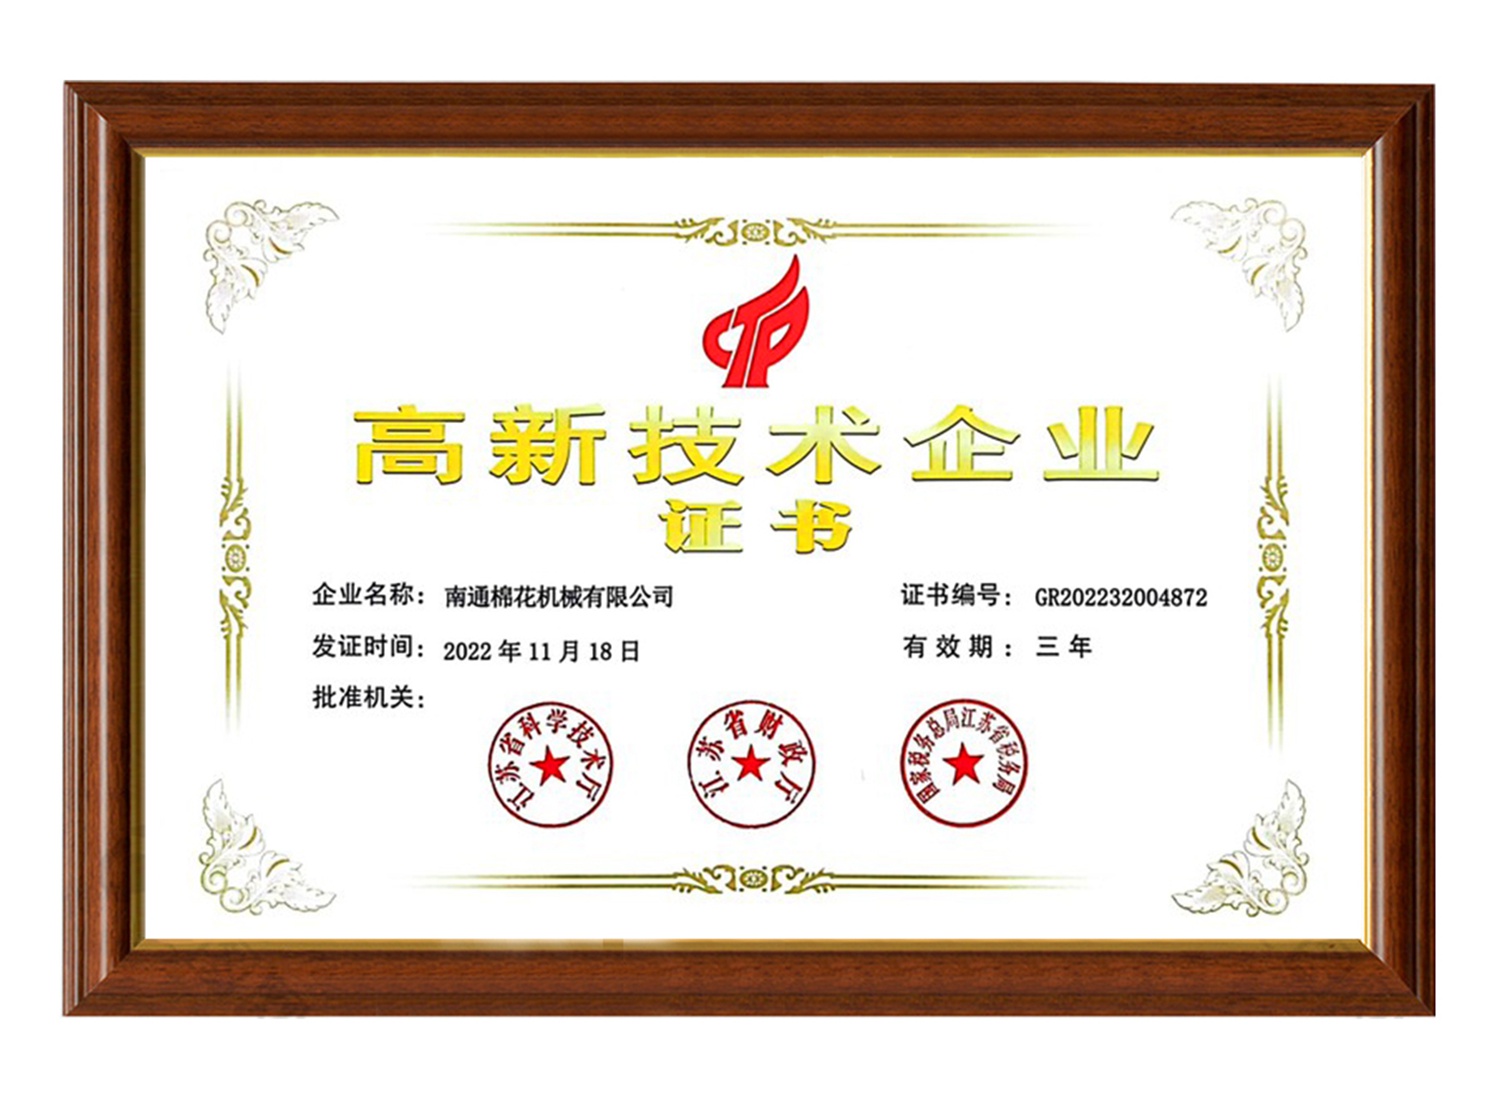 南通棉花机械有限公司高新技术企业证书